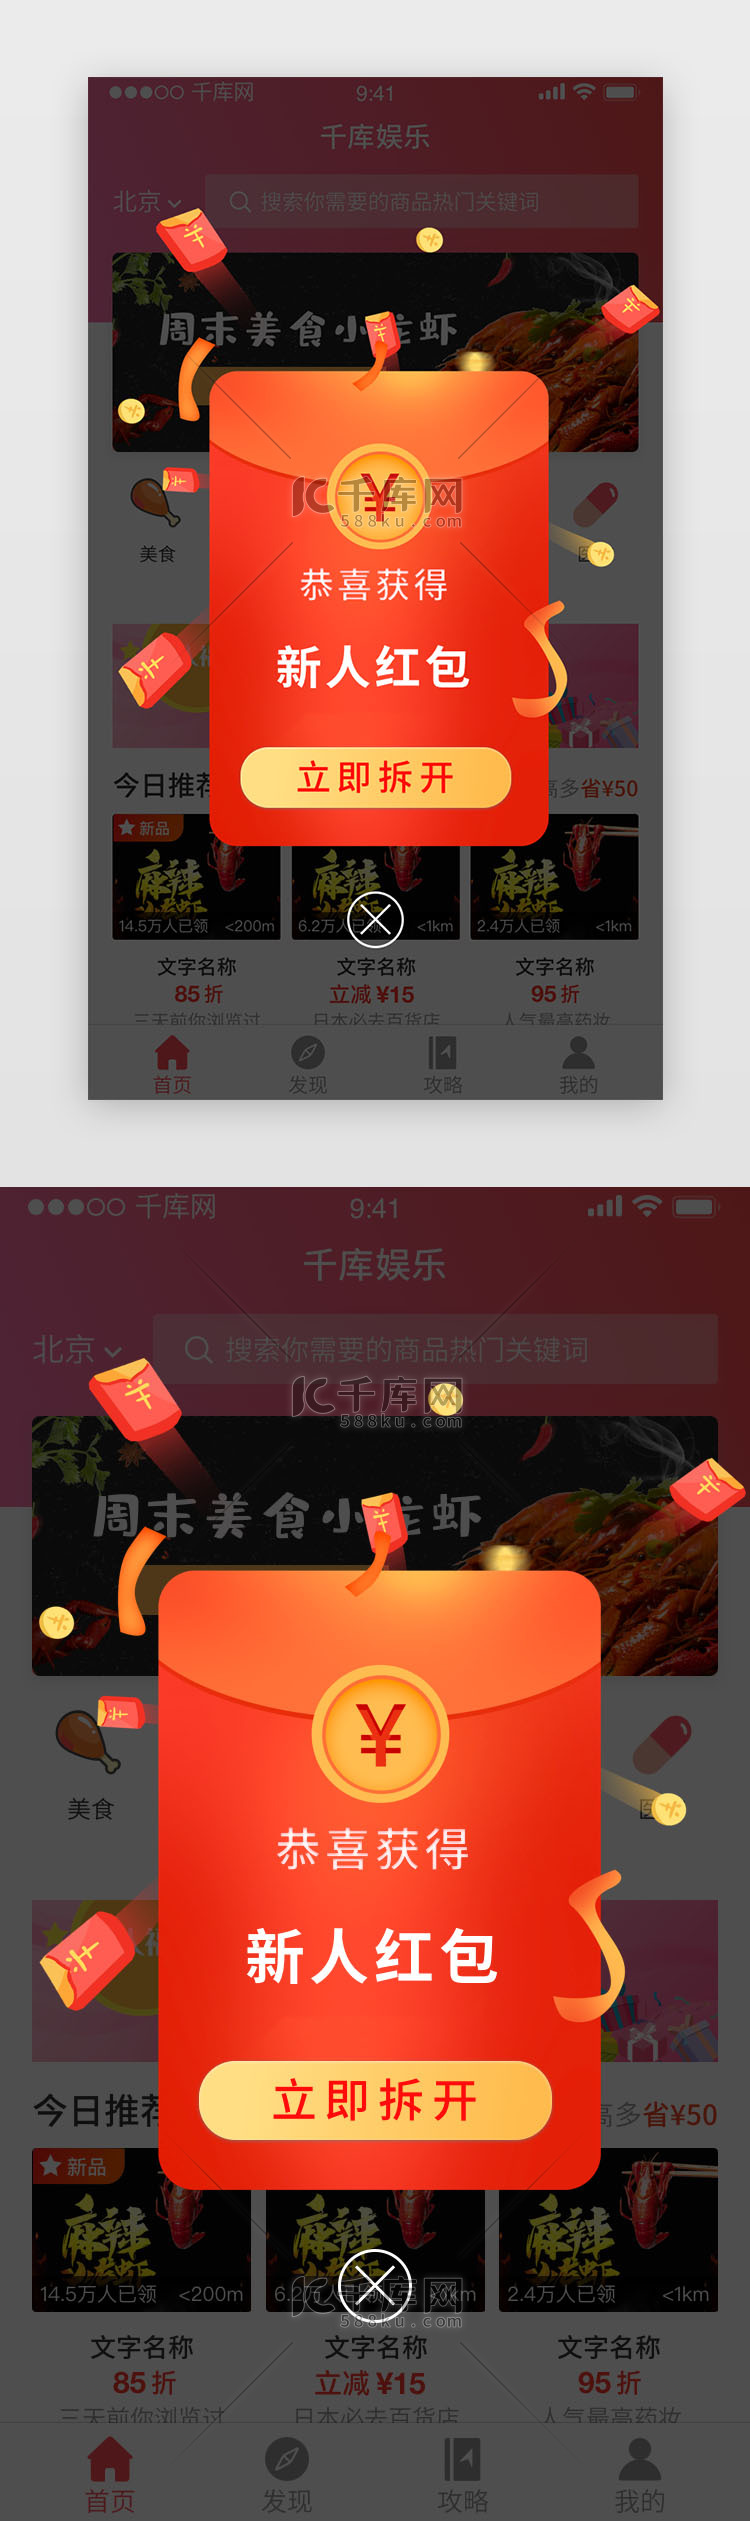 红色新用户红包奖励app弹窗